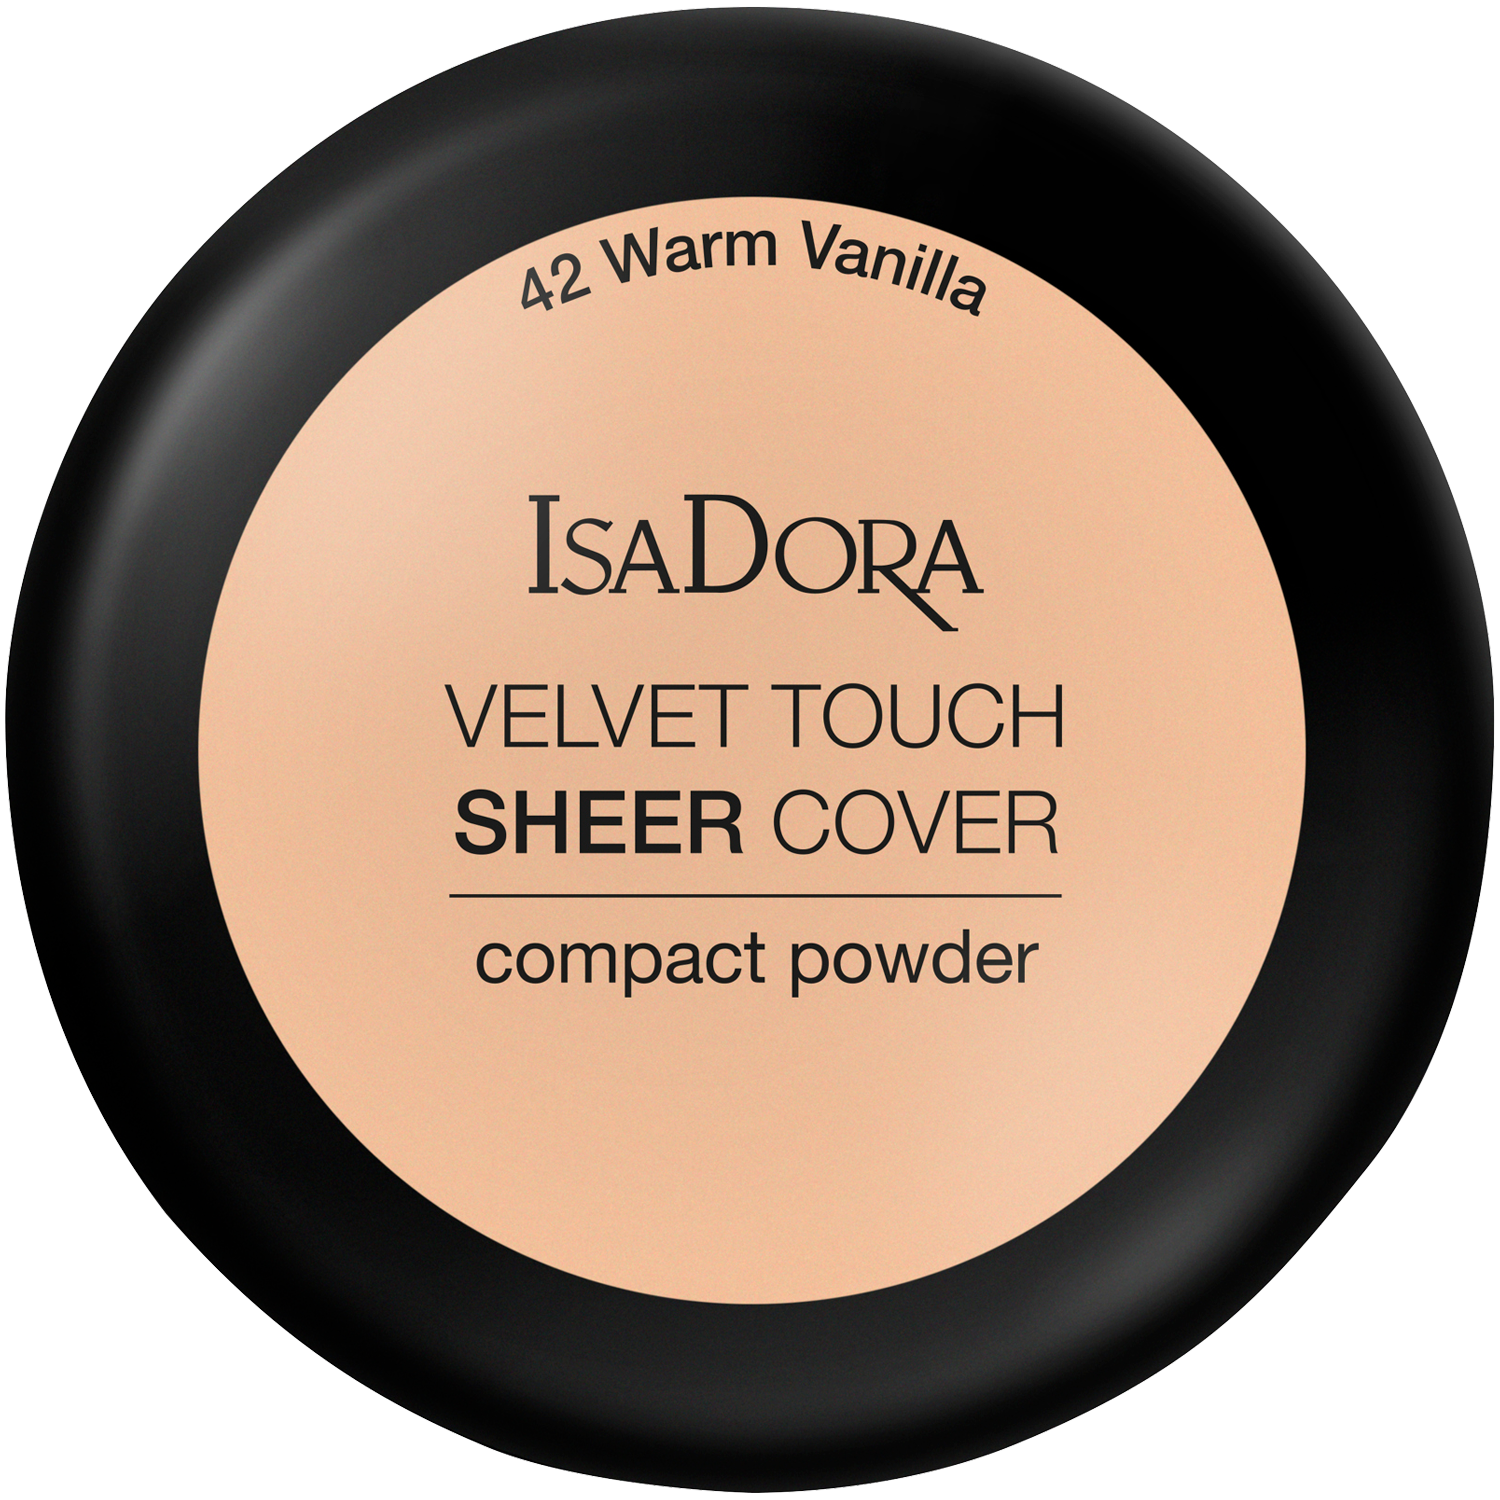 la femme 5588 velvet touch face powder banana Пудра для лица 42 теплая ваниль Isadora Velvet Touch Sheer Cover, 7,5 гр